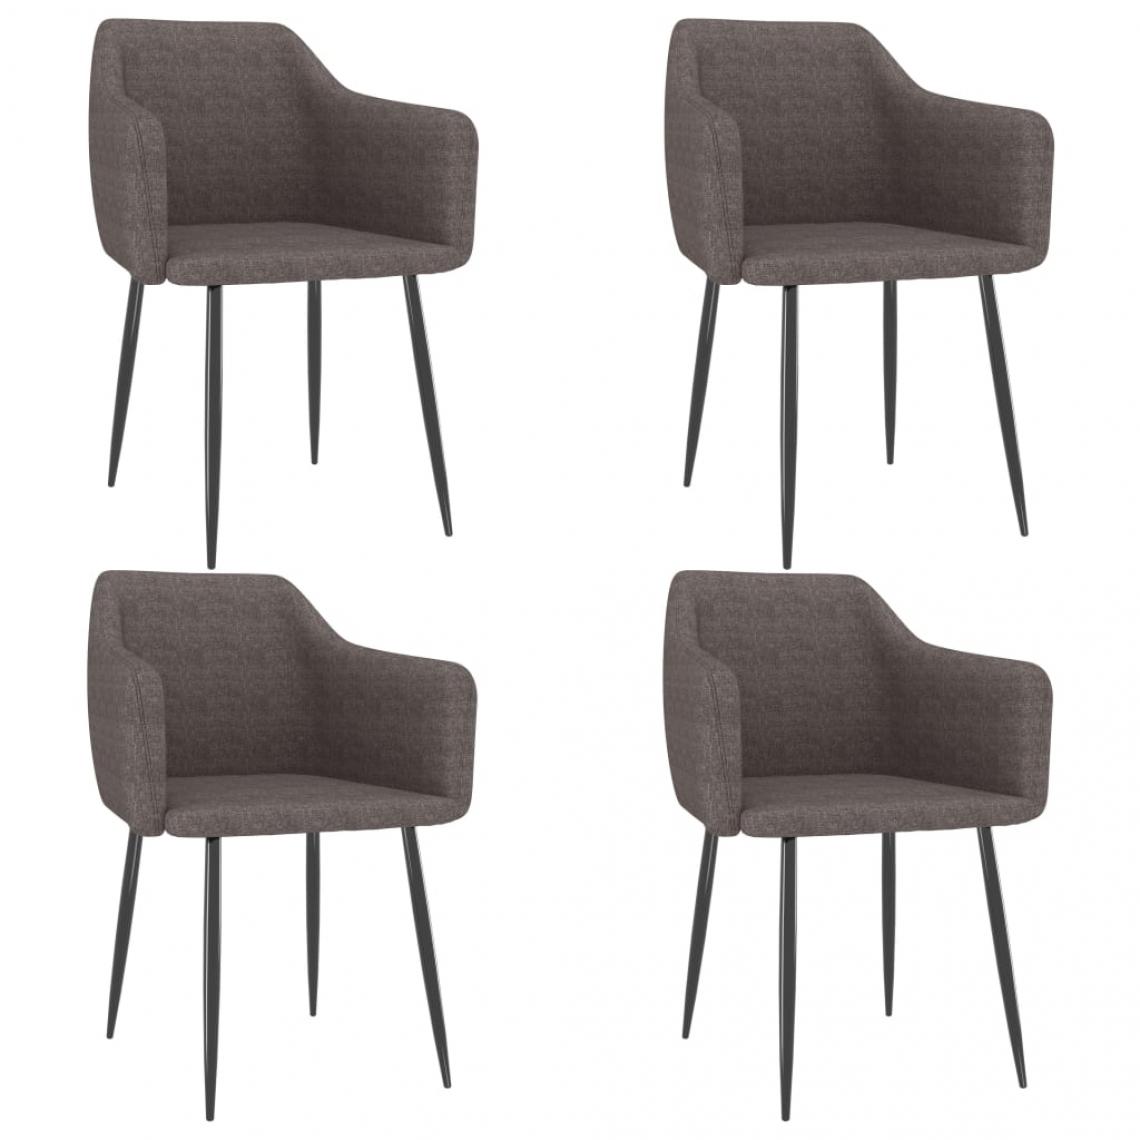 Decoshop26 - Lot de 4 chaises de salle à manger cuisine style moderne tissu couleur taupe CDS022002 - Chaises